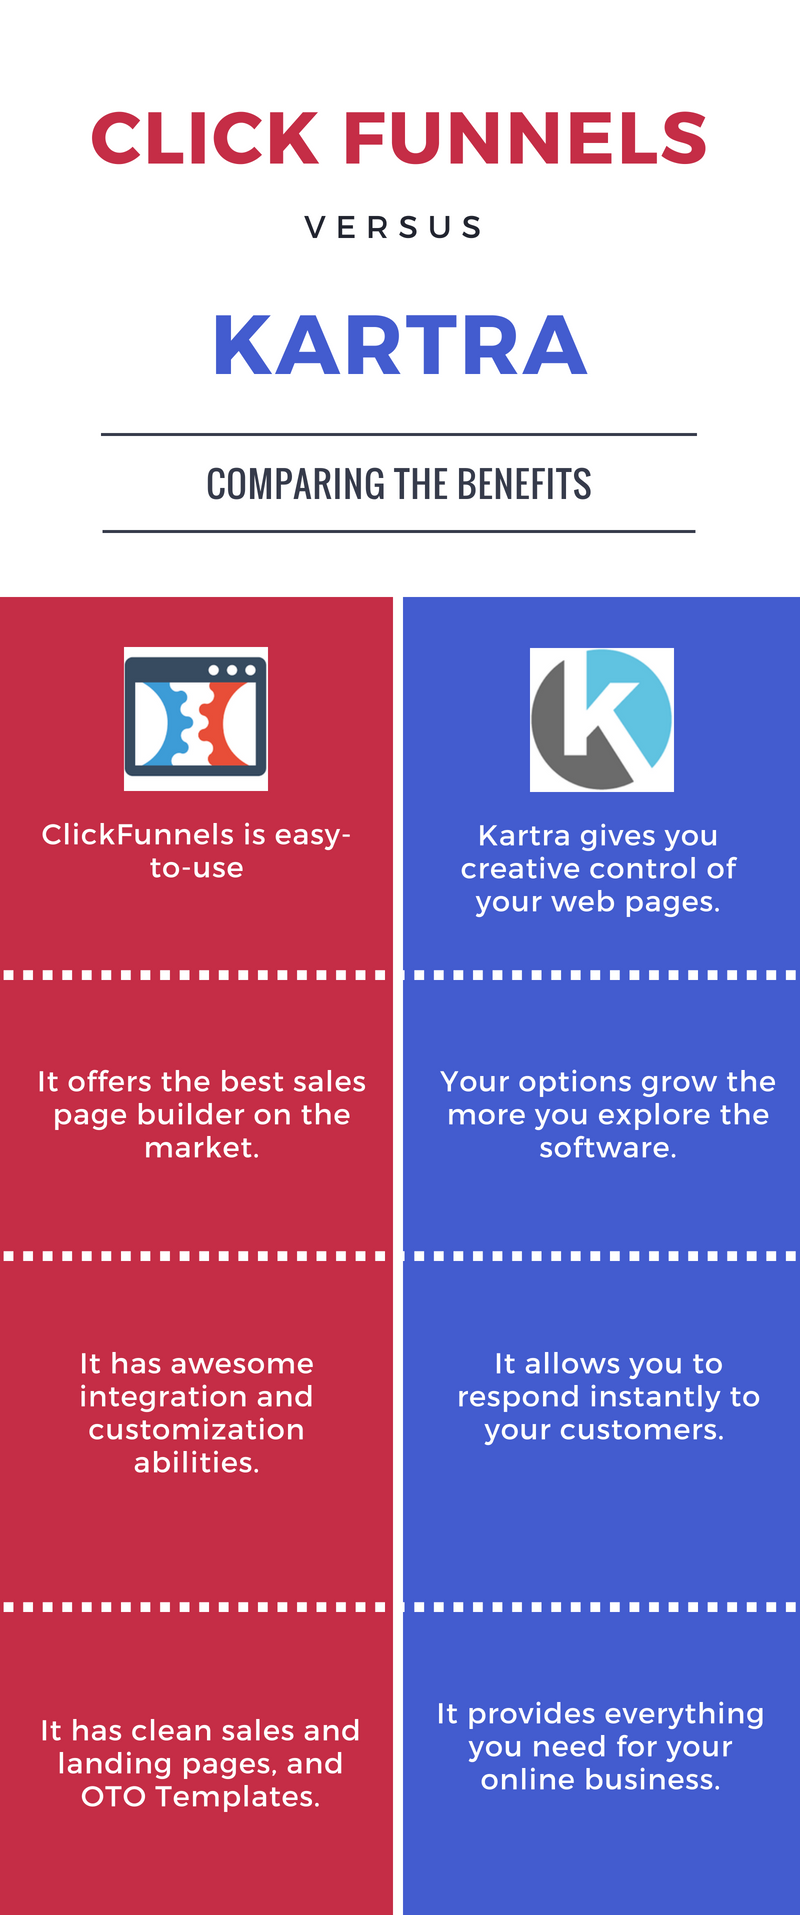 ClickFunnels vs Kartra Benefits